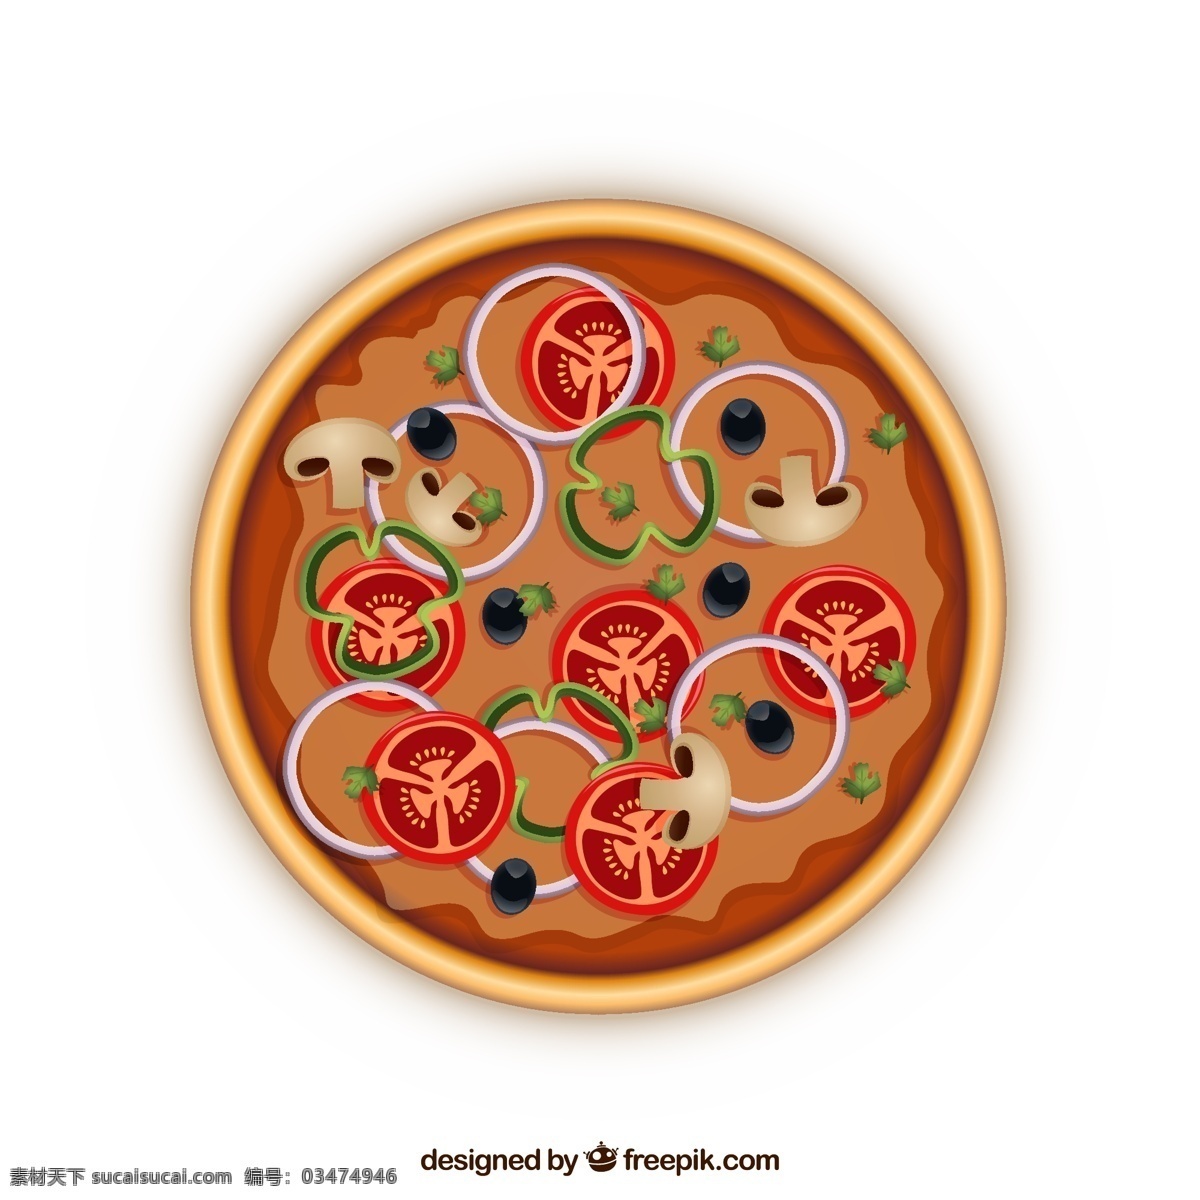 披萨 披萨比萨 披萨海报 披萨展板 披萨文化 披萨促销 披萨西餐 披萨快餐 披萨加盟 披萨店 披萨必胜店 比萨披萨 披萨包装 披萨美食 西式披萨 披萨馅饼 披萨价格表 披萨外卖 披萨画 披萨菜单 正宗披萨 披萨饼 披萨传单 意大利披萨 pizza 美味披萨 中国披萨 披萨做法 披萨饮食 披萨团购 平面素材